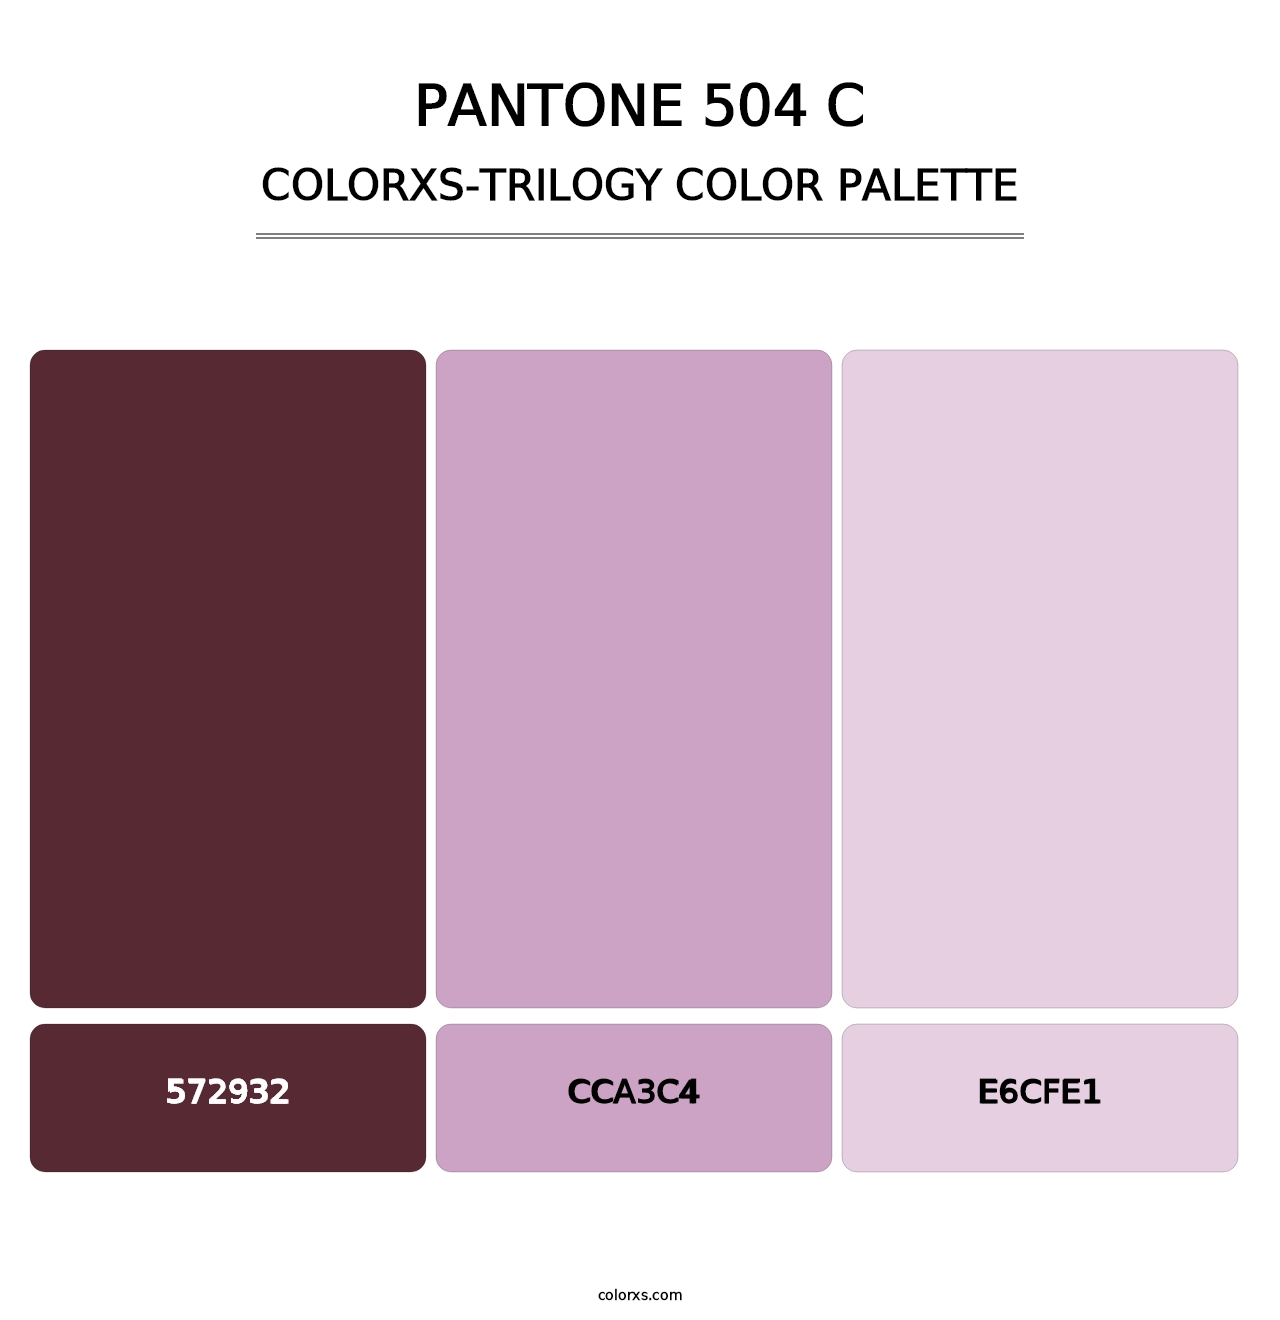 PANTONE 504 C - Colorxs Trilogy Palette